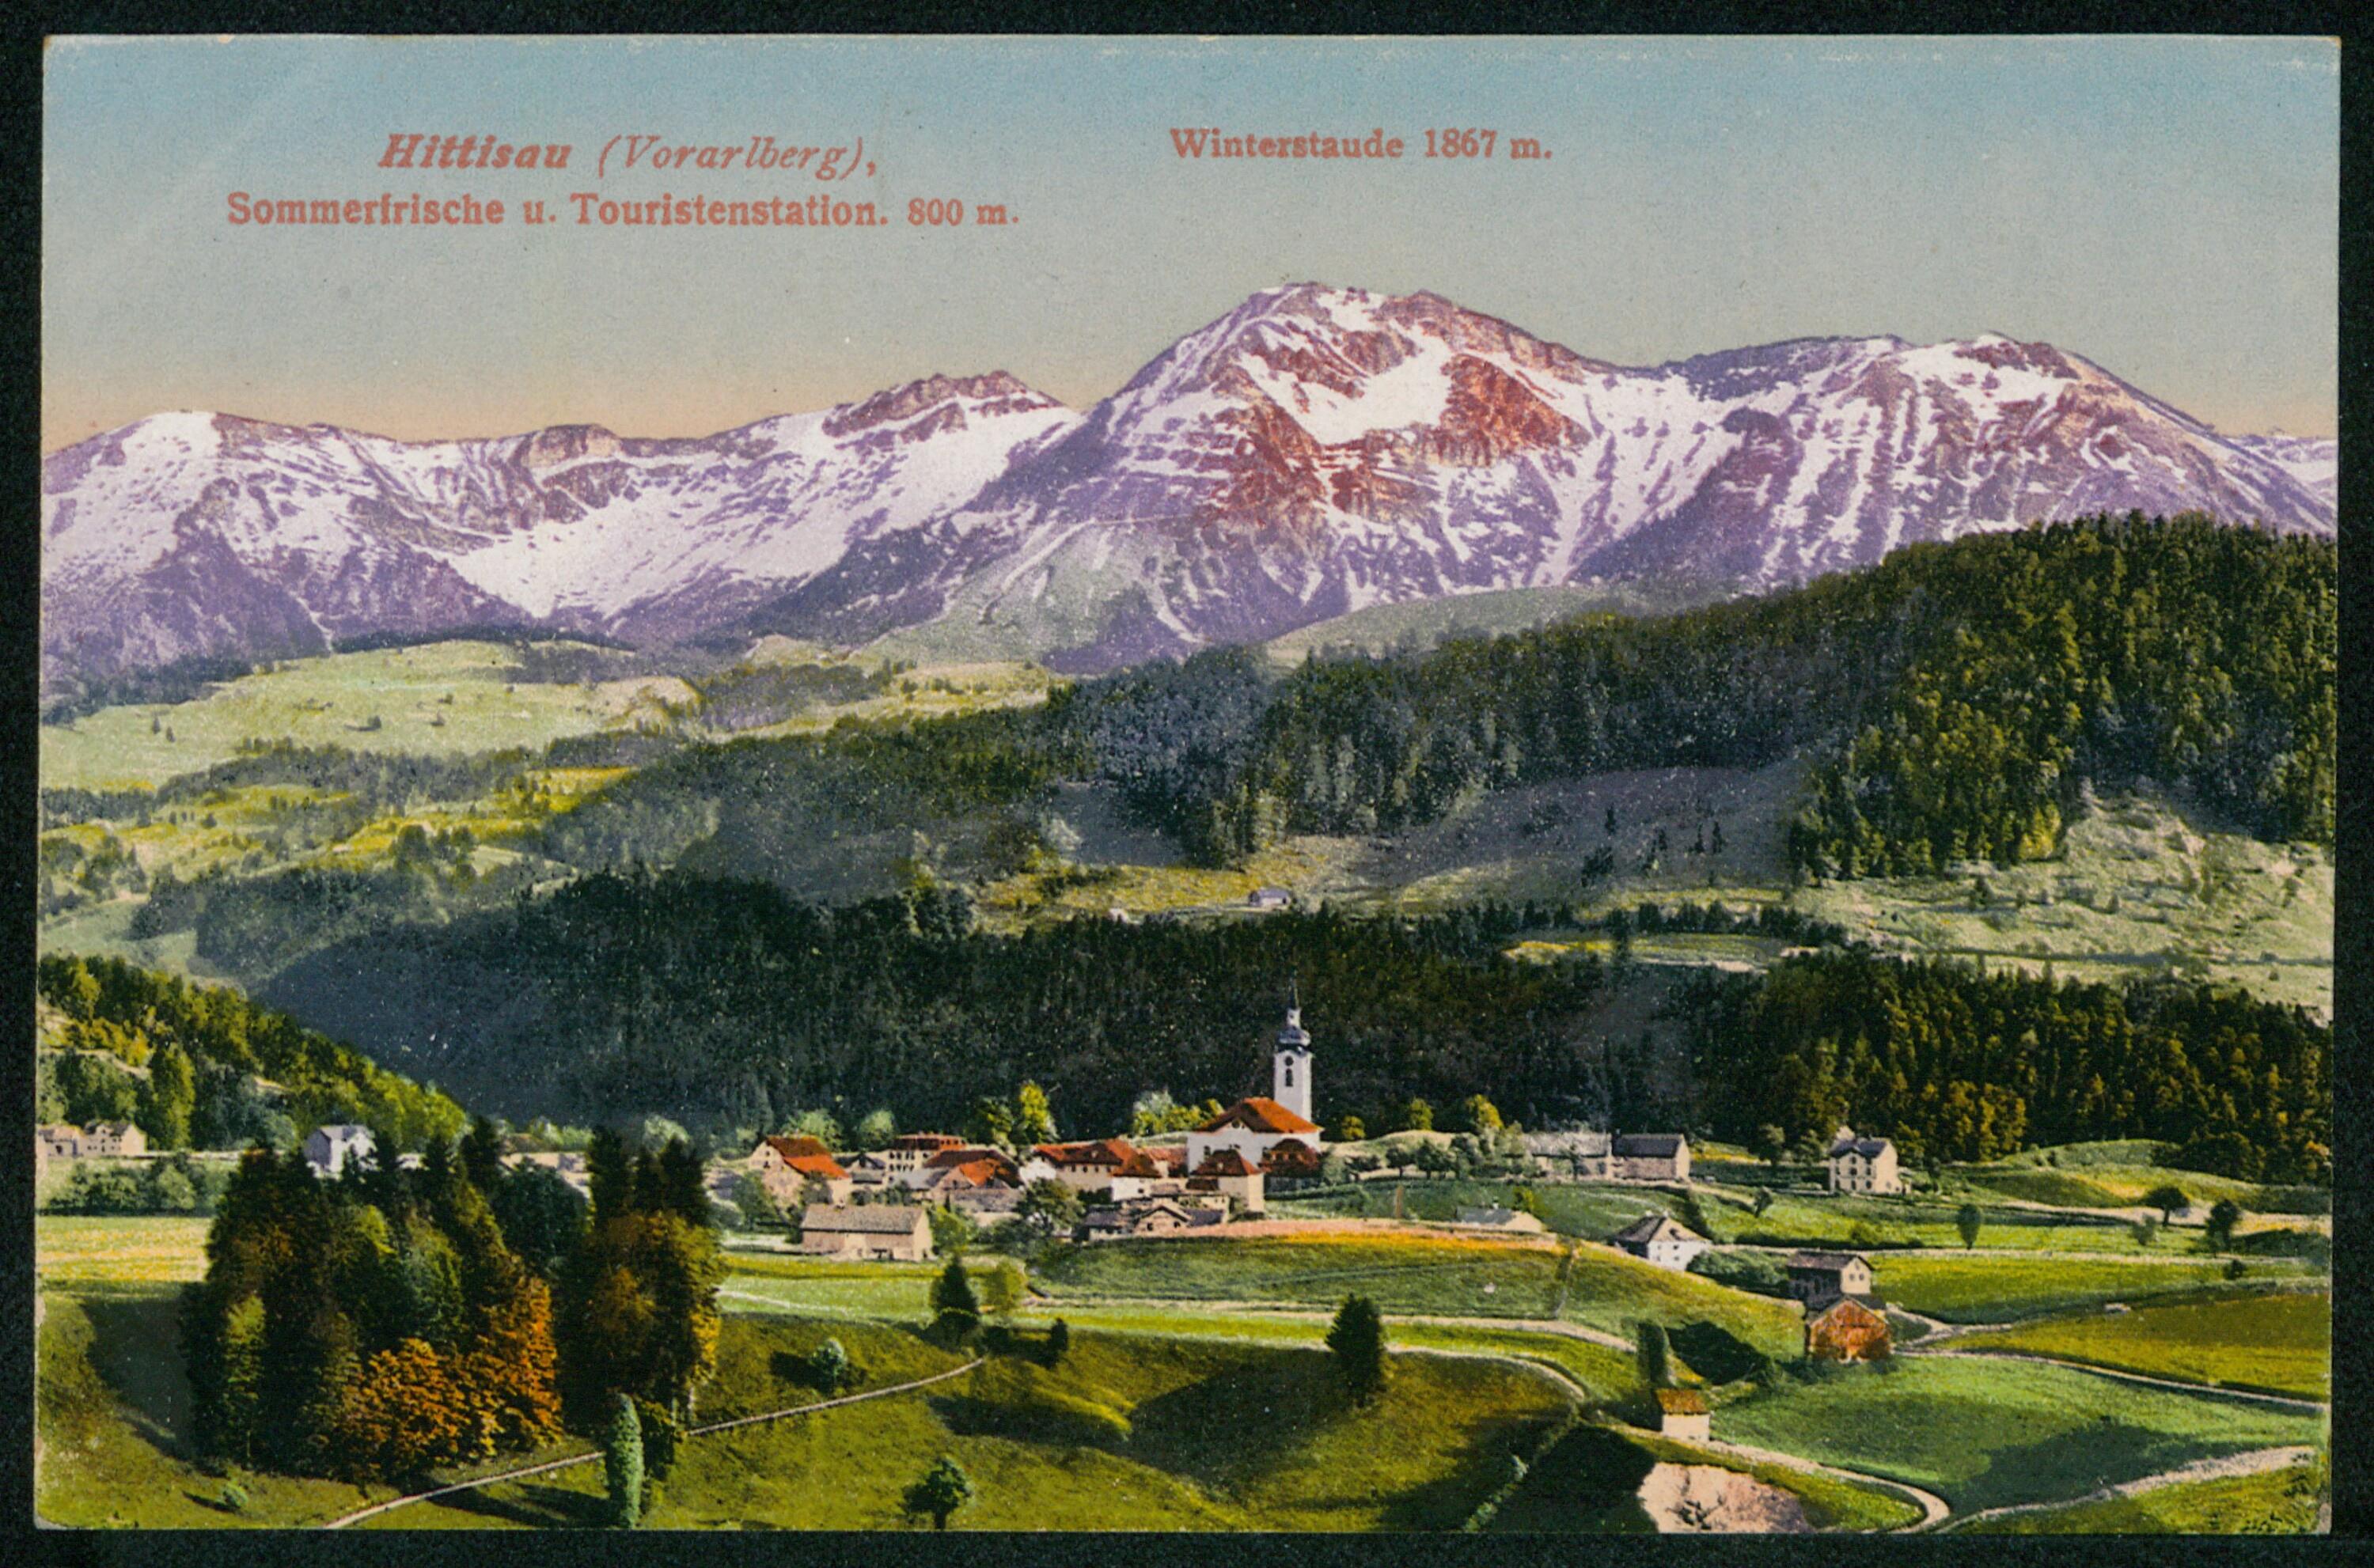 Hittisau (Vorarlberg), Sommerfrische u. Touristenstation, 800 m.></div>


    <hr>
    <div class=